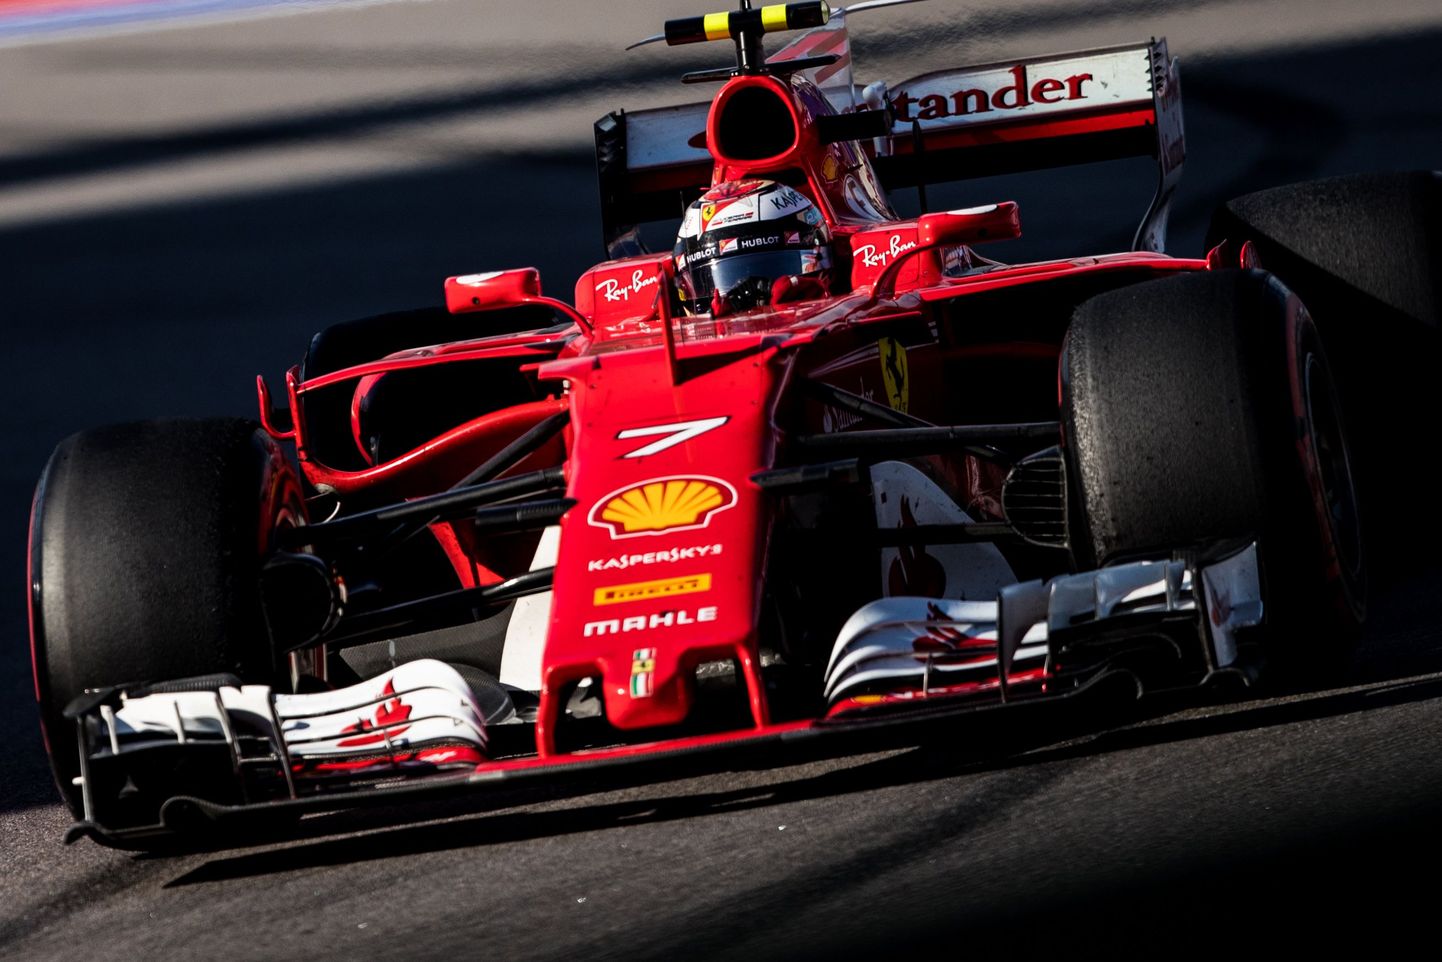 Ferrari võib end vormel-1 sarjas mõnusalt tunda - raha muudkui tuleb.